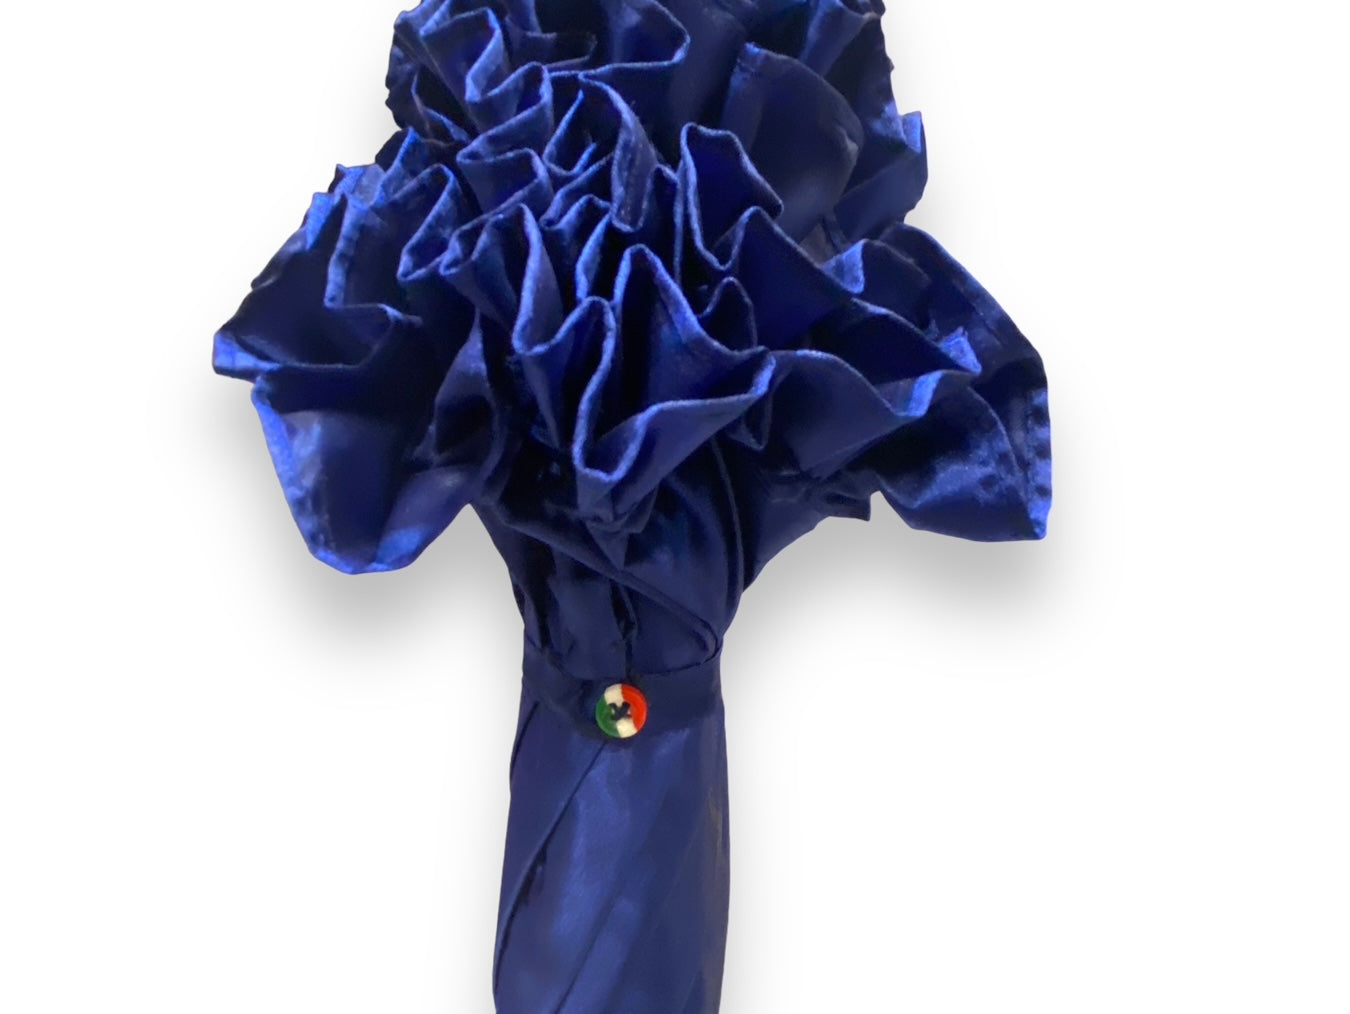 Ombrello Donna "stile 800" Colore blu lucido manico in canna di Malacca lavorazione artigianale Ombrelli Domizio dal 1989 Made in Italy